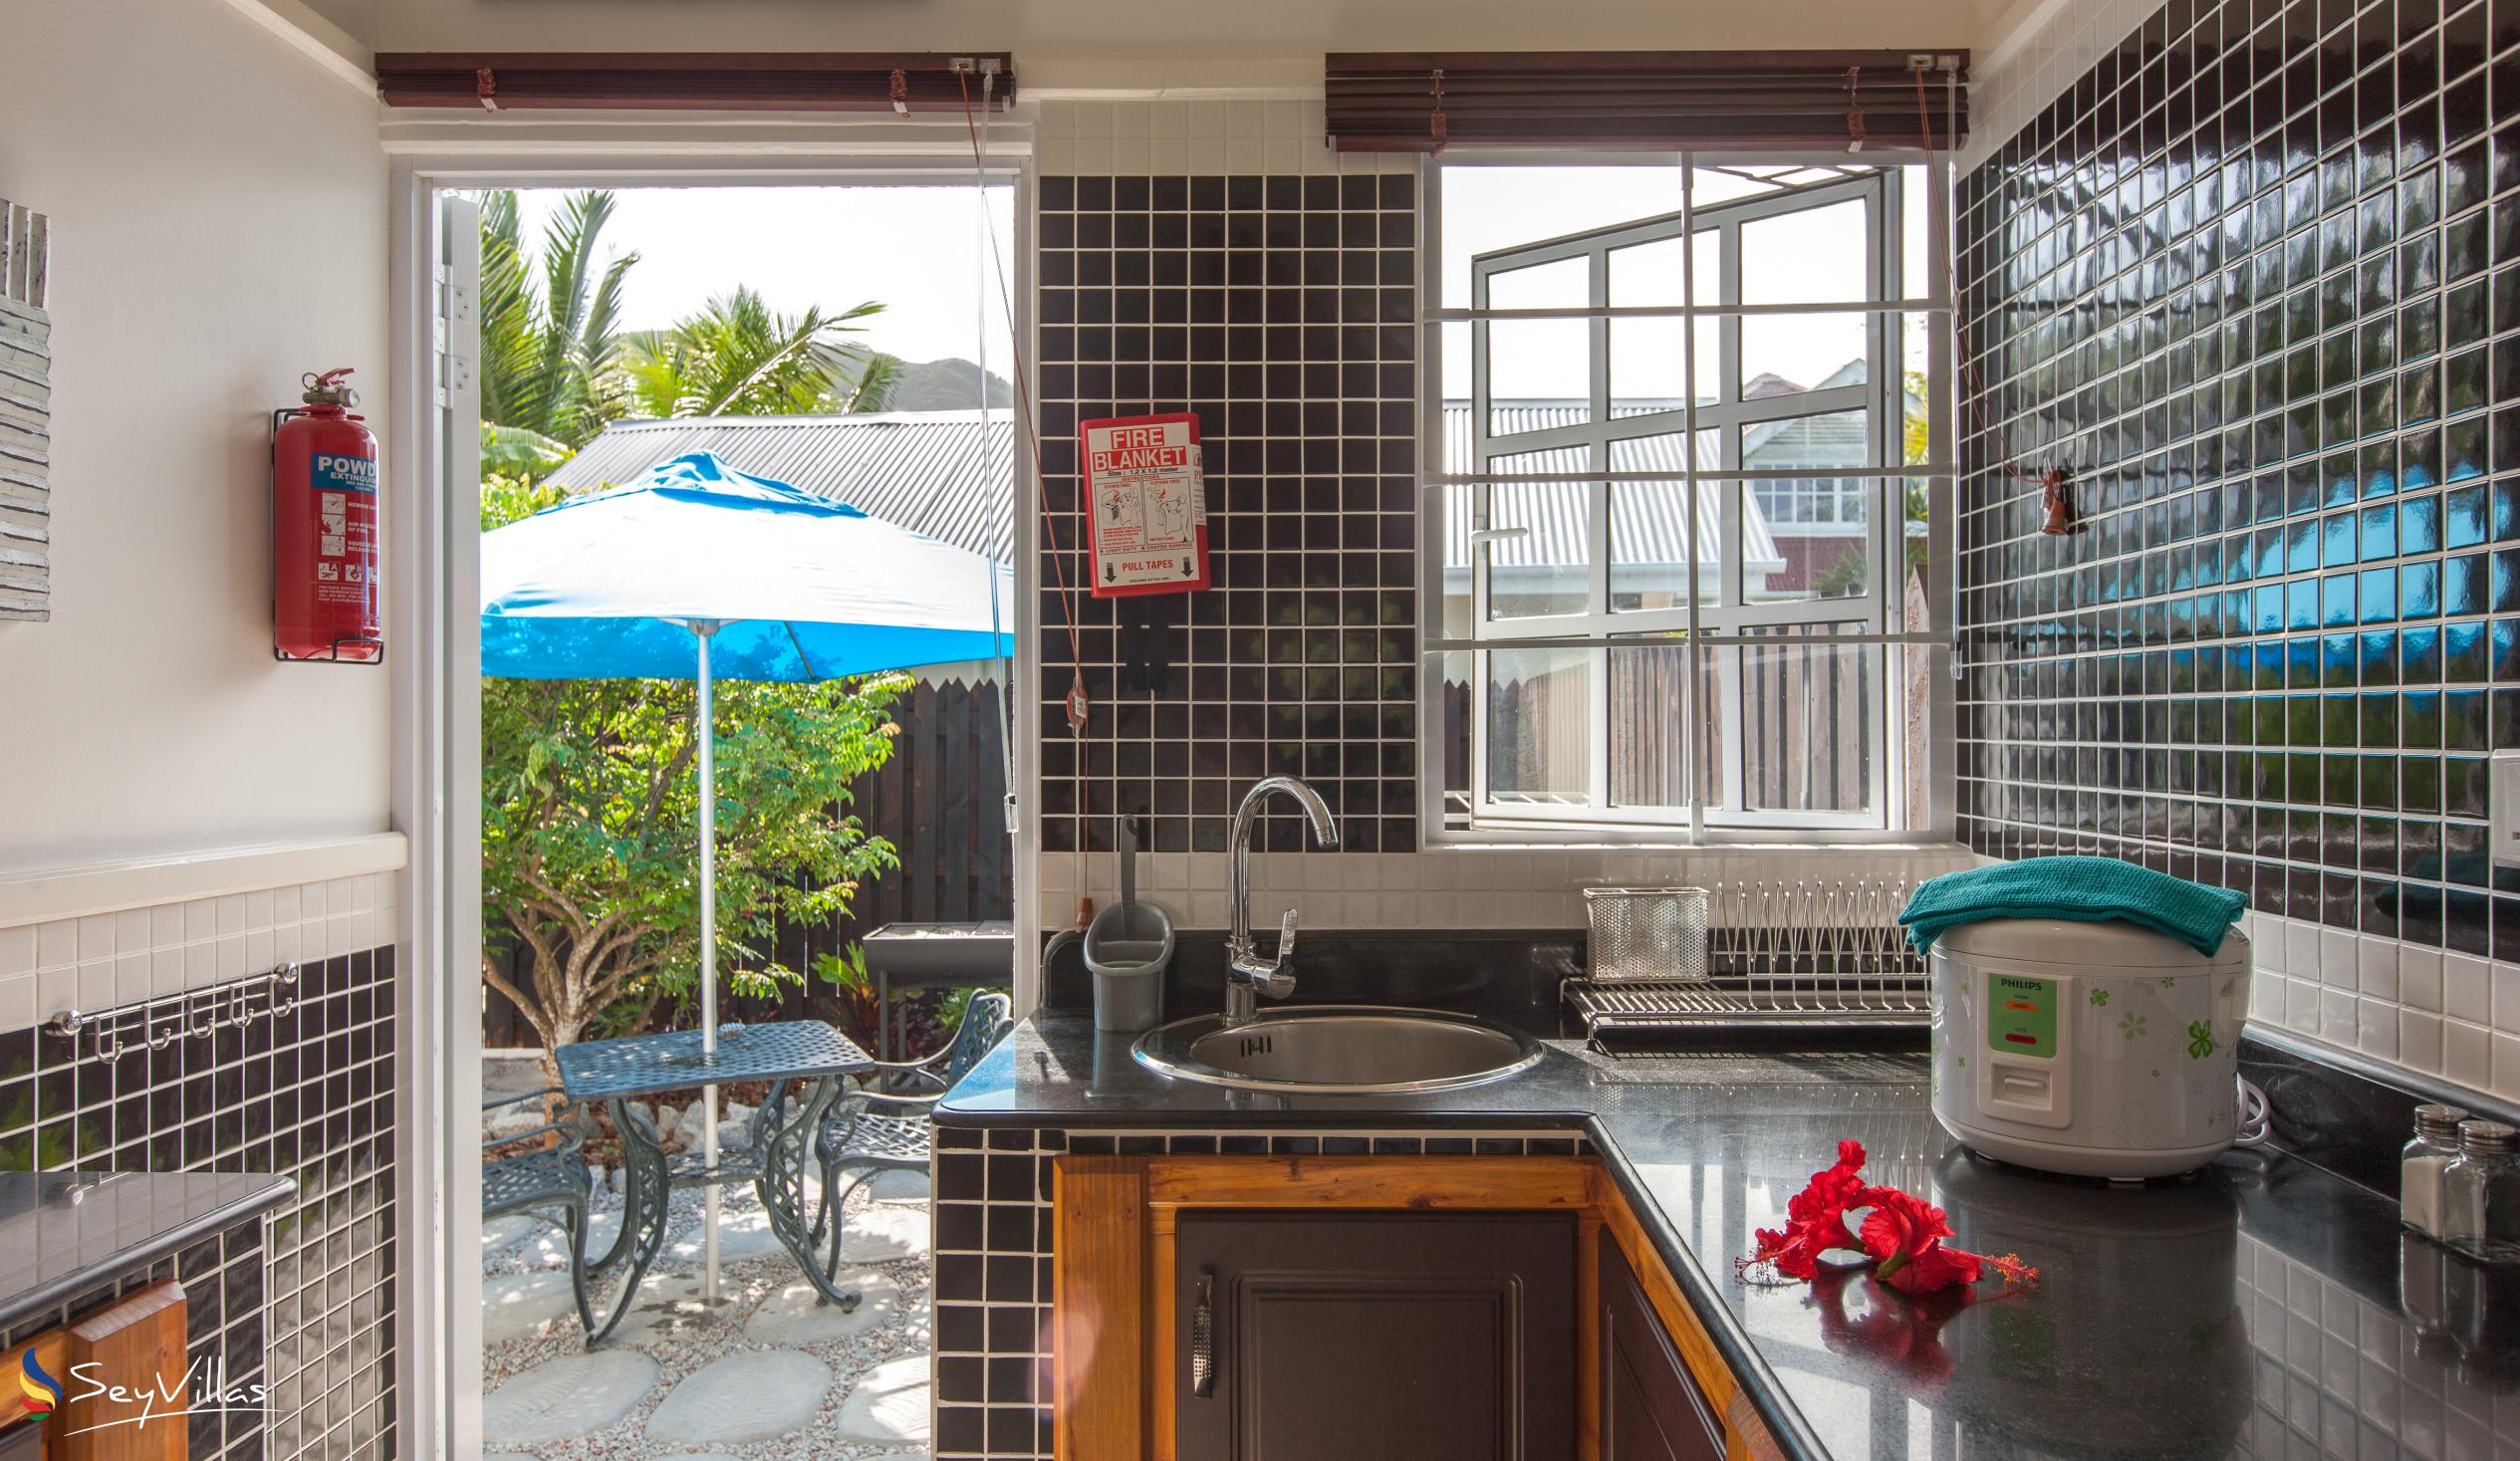 Foto 15: Maison Charme De L'ile - Garden View Apartment - La Digue (Seychellen)